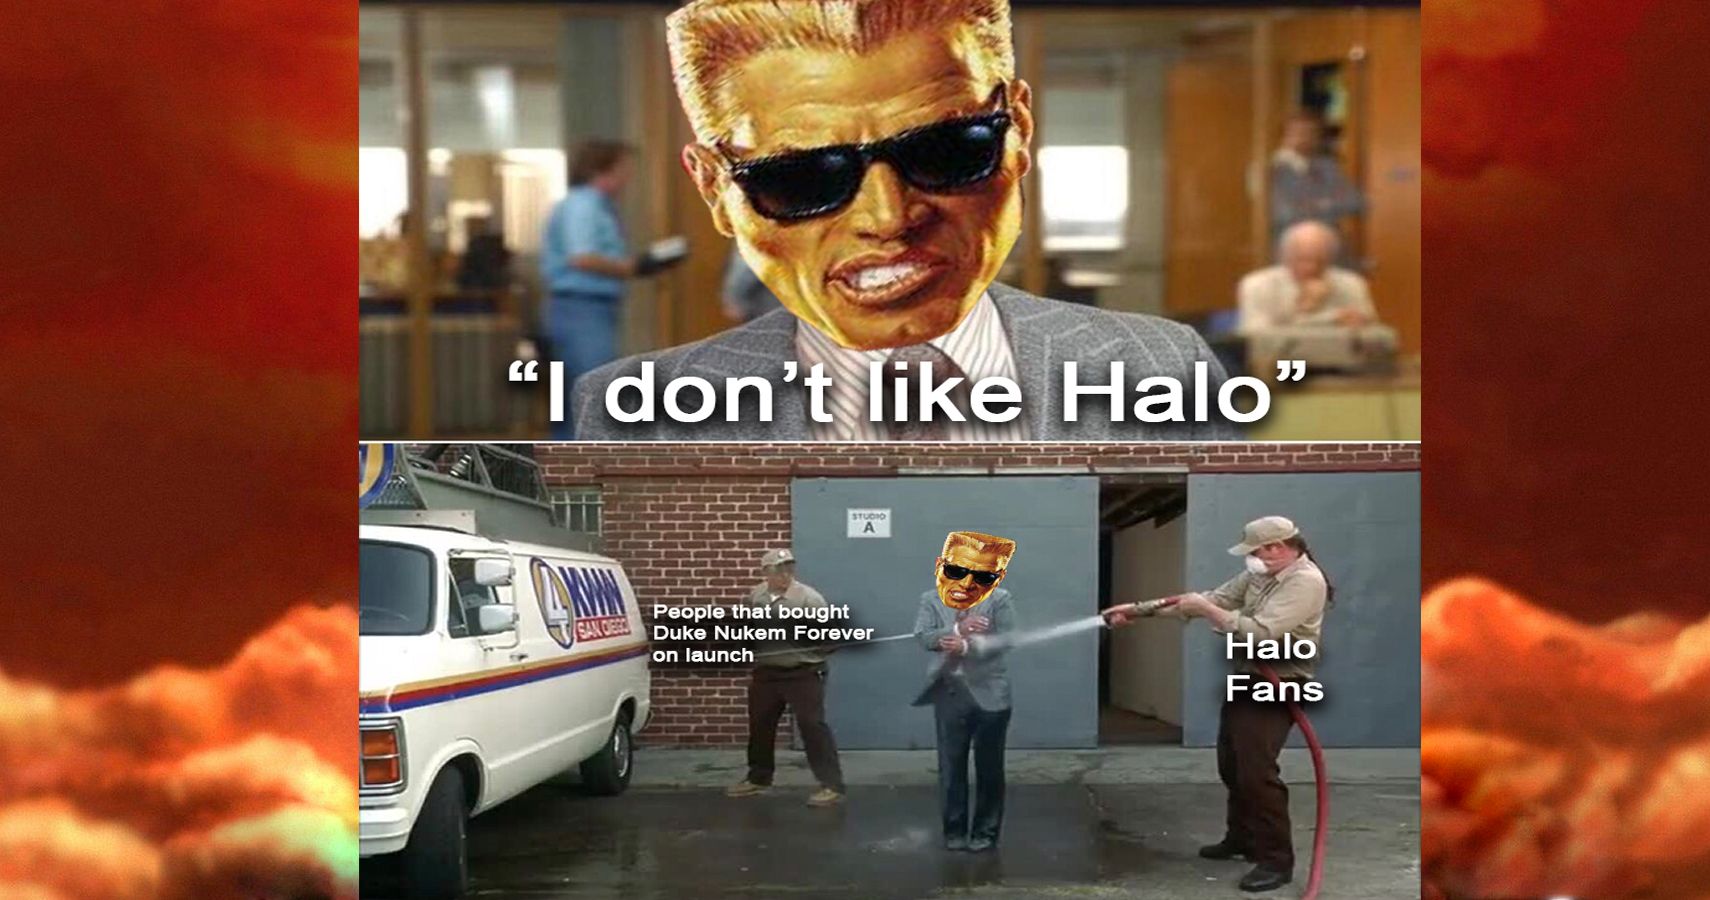 Duke Nukem Forever Meme about Duke making fun of Halo